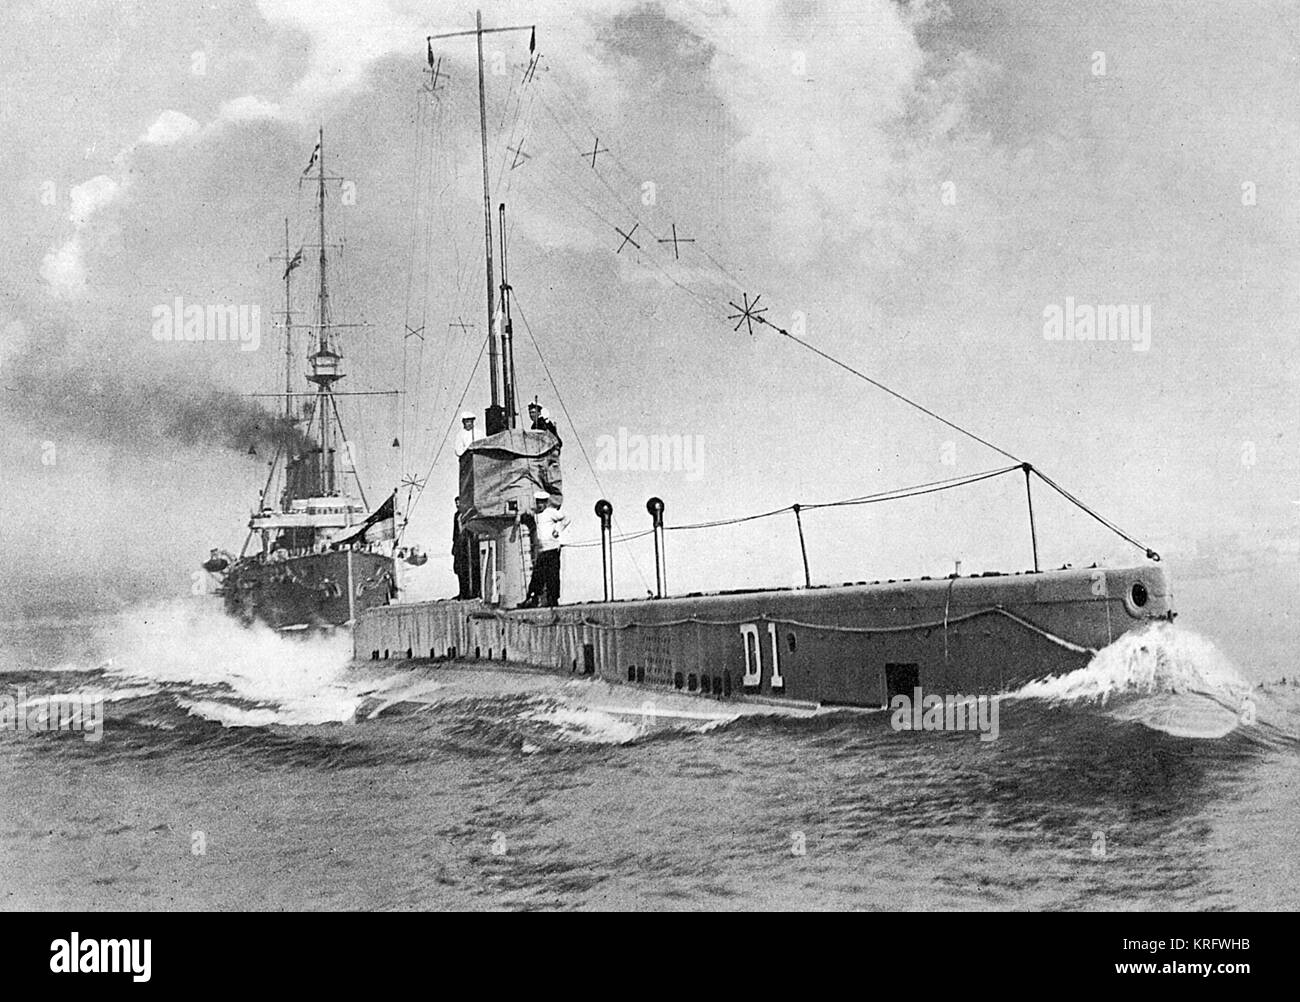 Britisches U-Boot 'D1' mit H.M.S. 'DRake' in ihr. Die neuesten britischen U-Boote während des Ersten Weltkriegs wurden mit der drahtlosen Telegrafie. Datum: 1914 Stockfoto